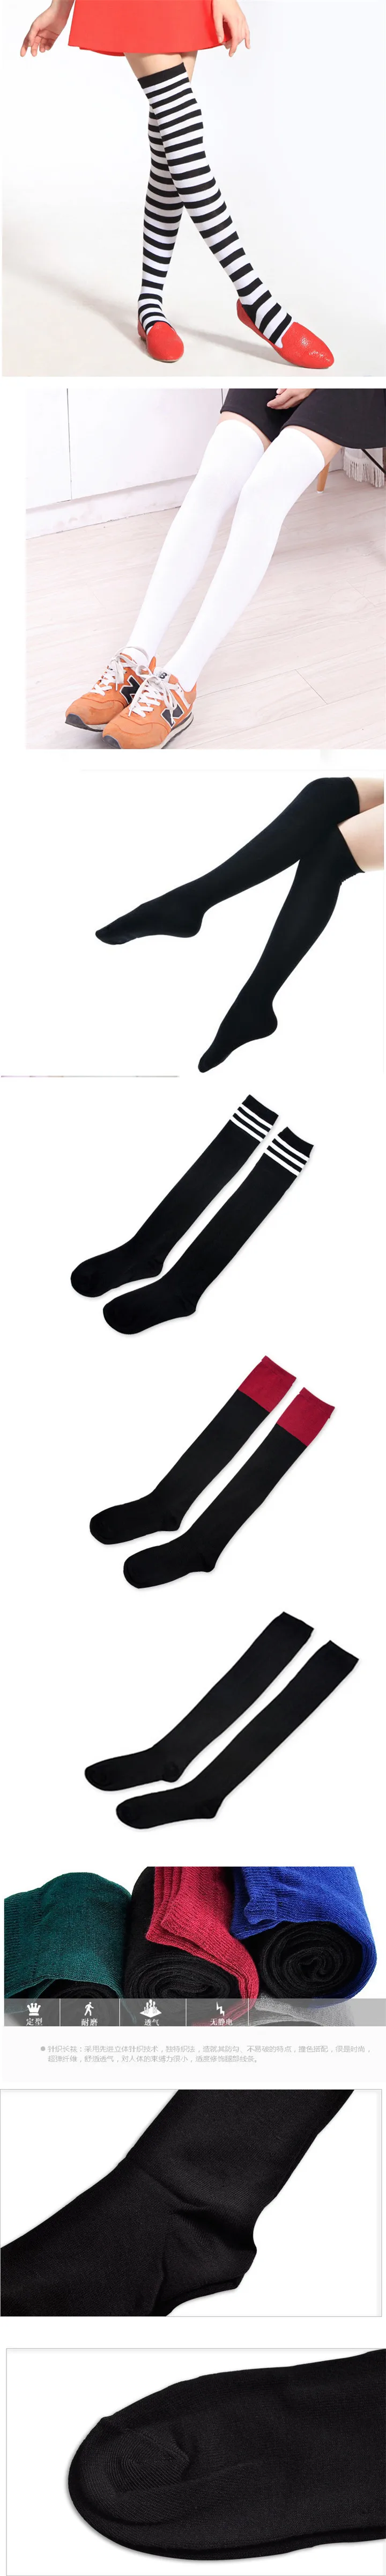 Полосатые носки, гетры, вязаные, с тремя полосками, черные и белые, хлопковые, комбинированные, женские, длинные носки, тонкие, выше колена, носки